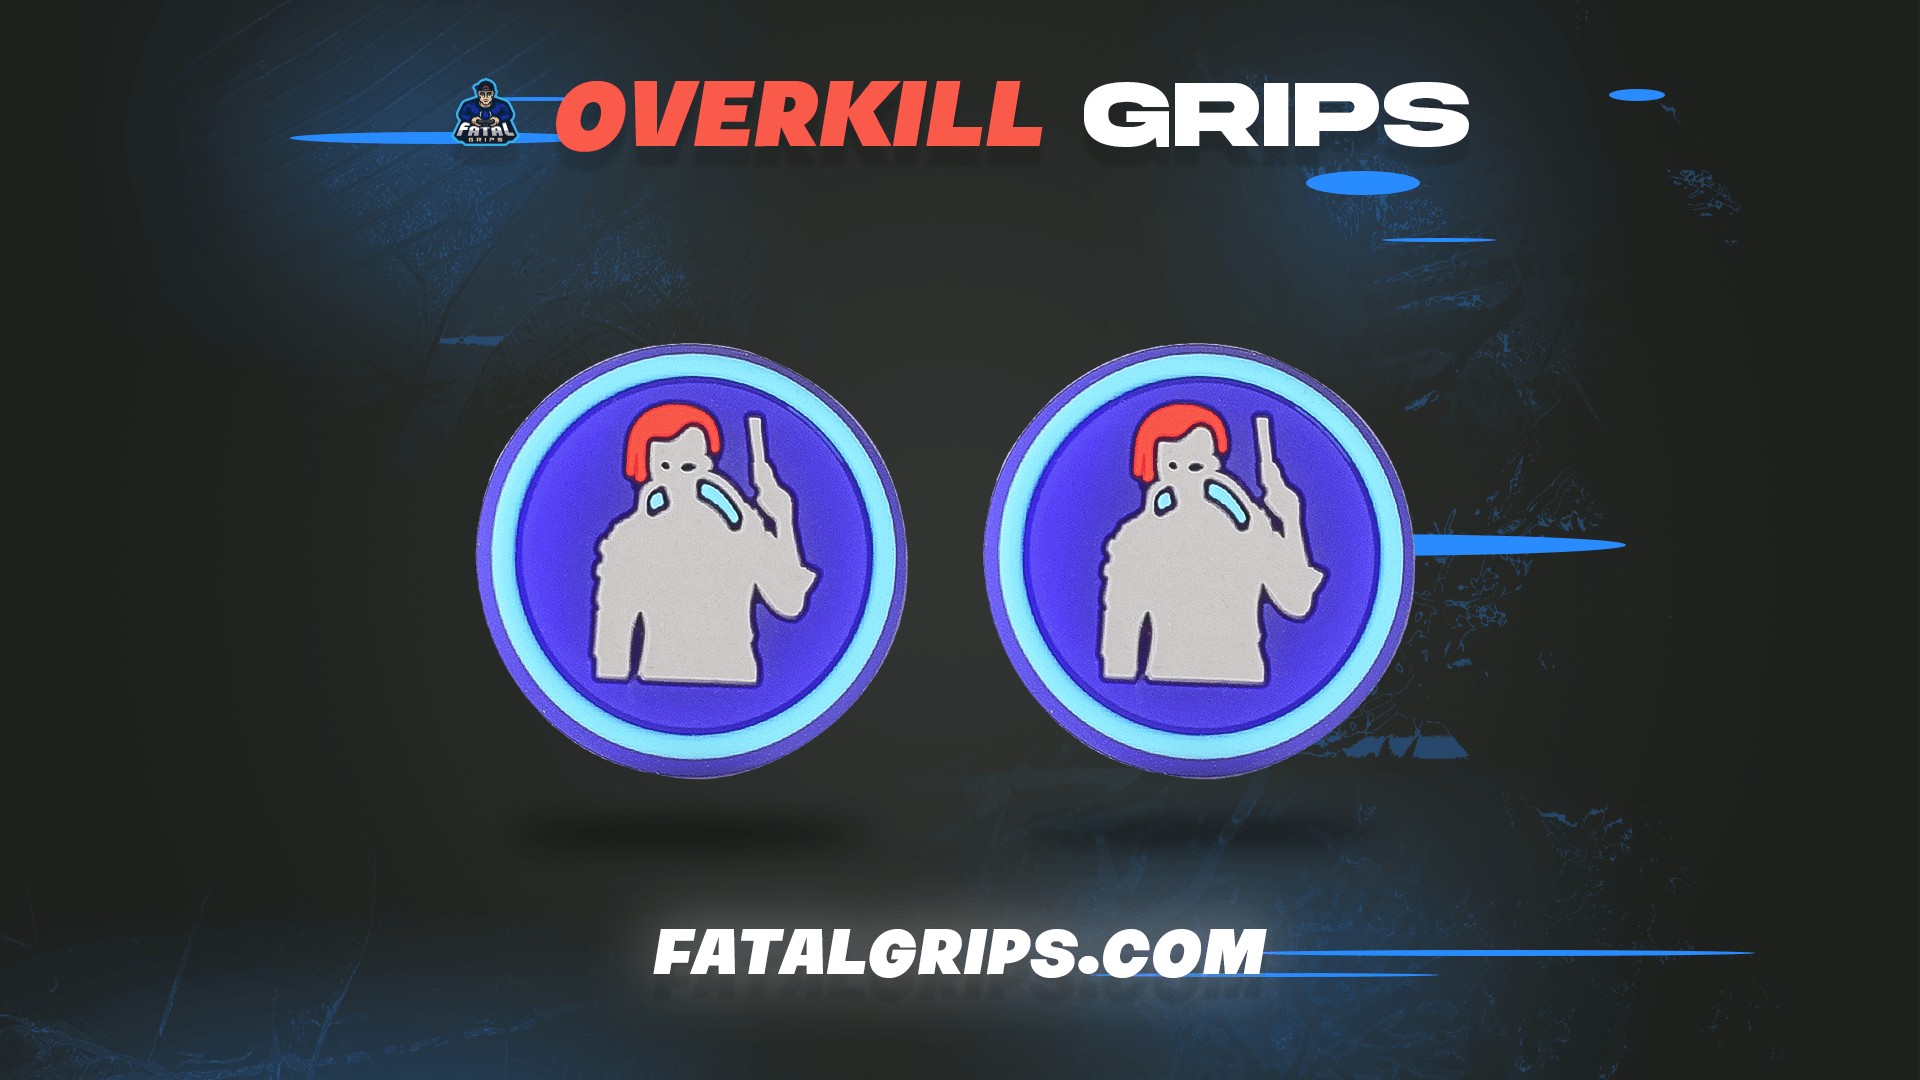 Overkill Grips - Fatal Grips